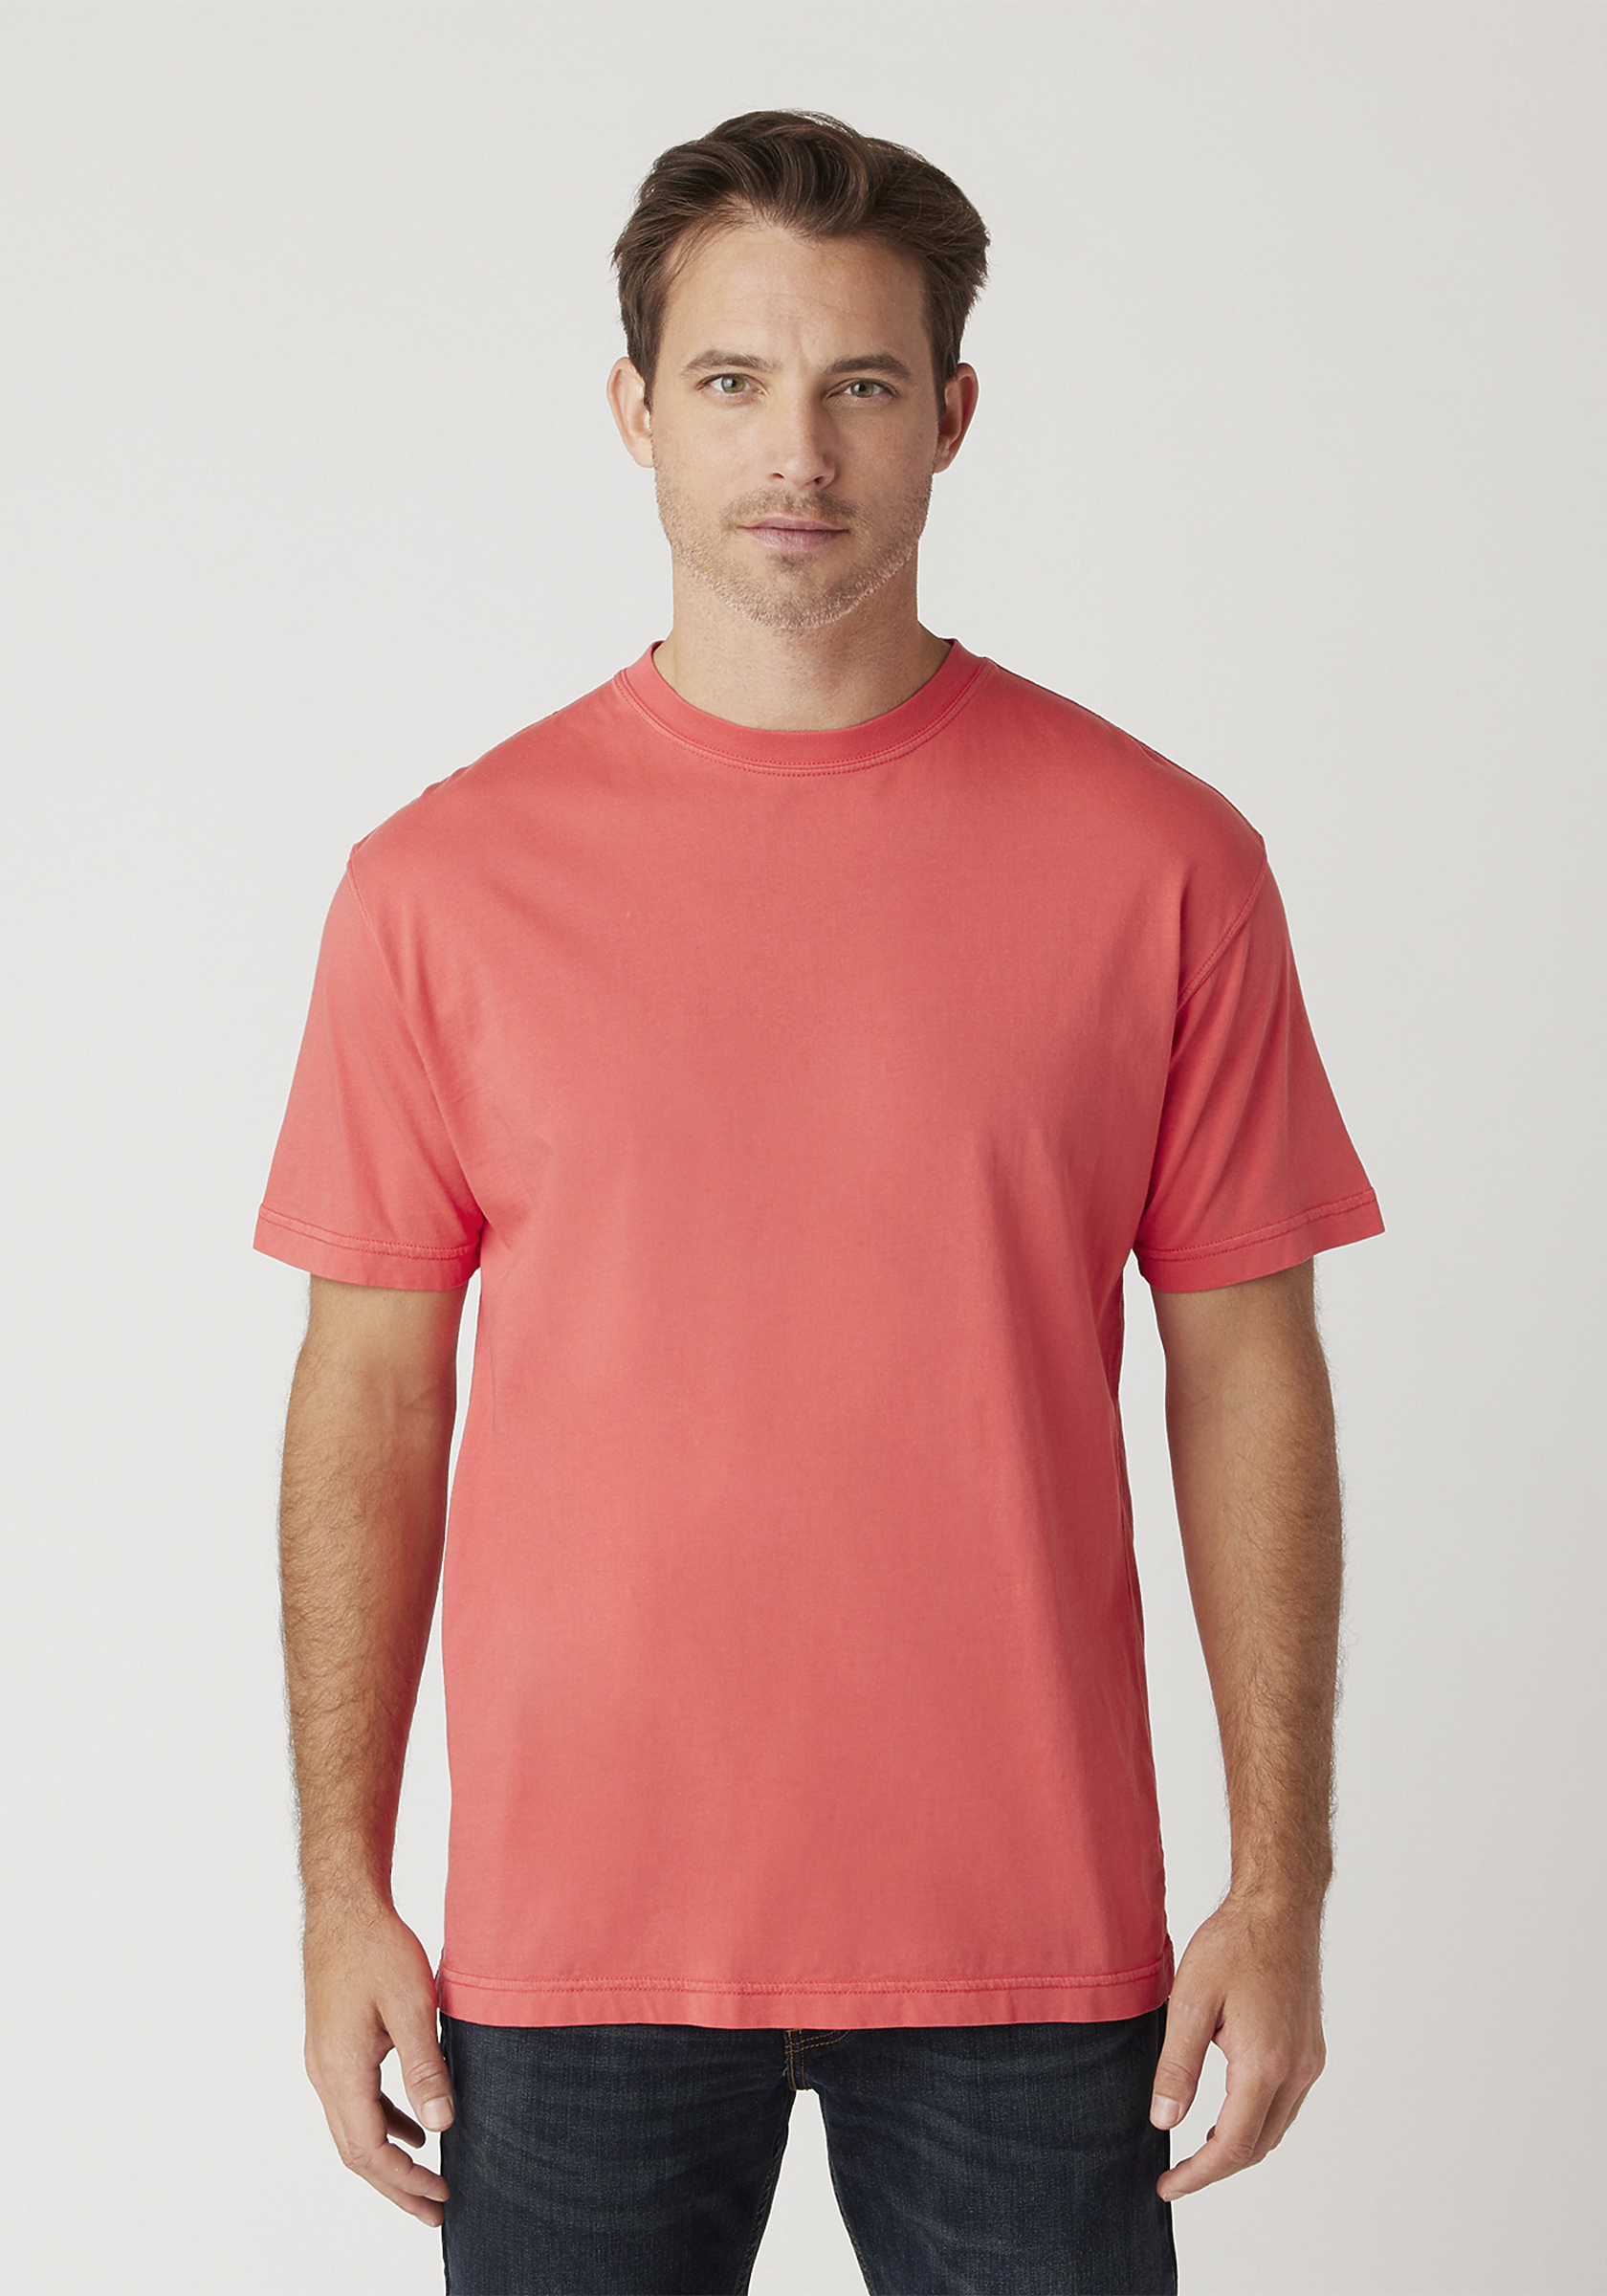 Fabric Dye 90 ml, 14 colors, T-Shirts et cetera